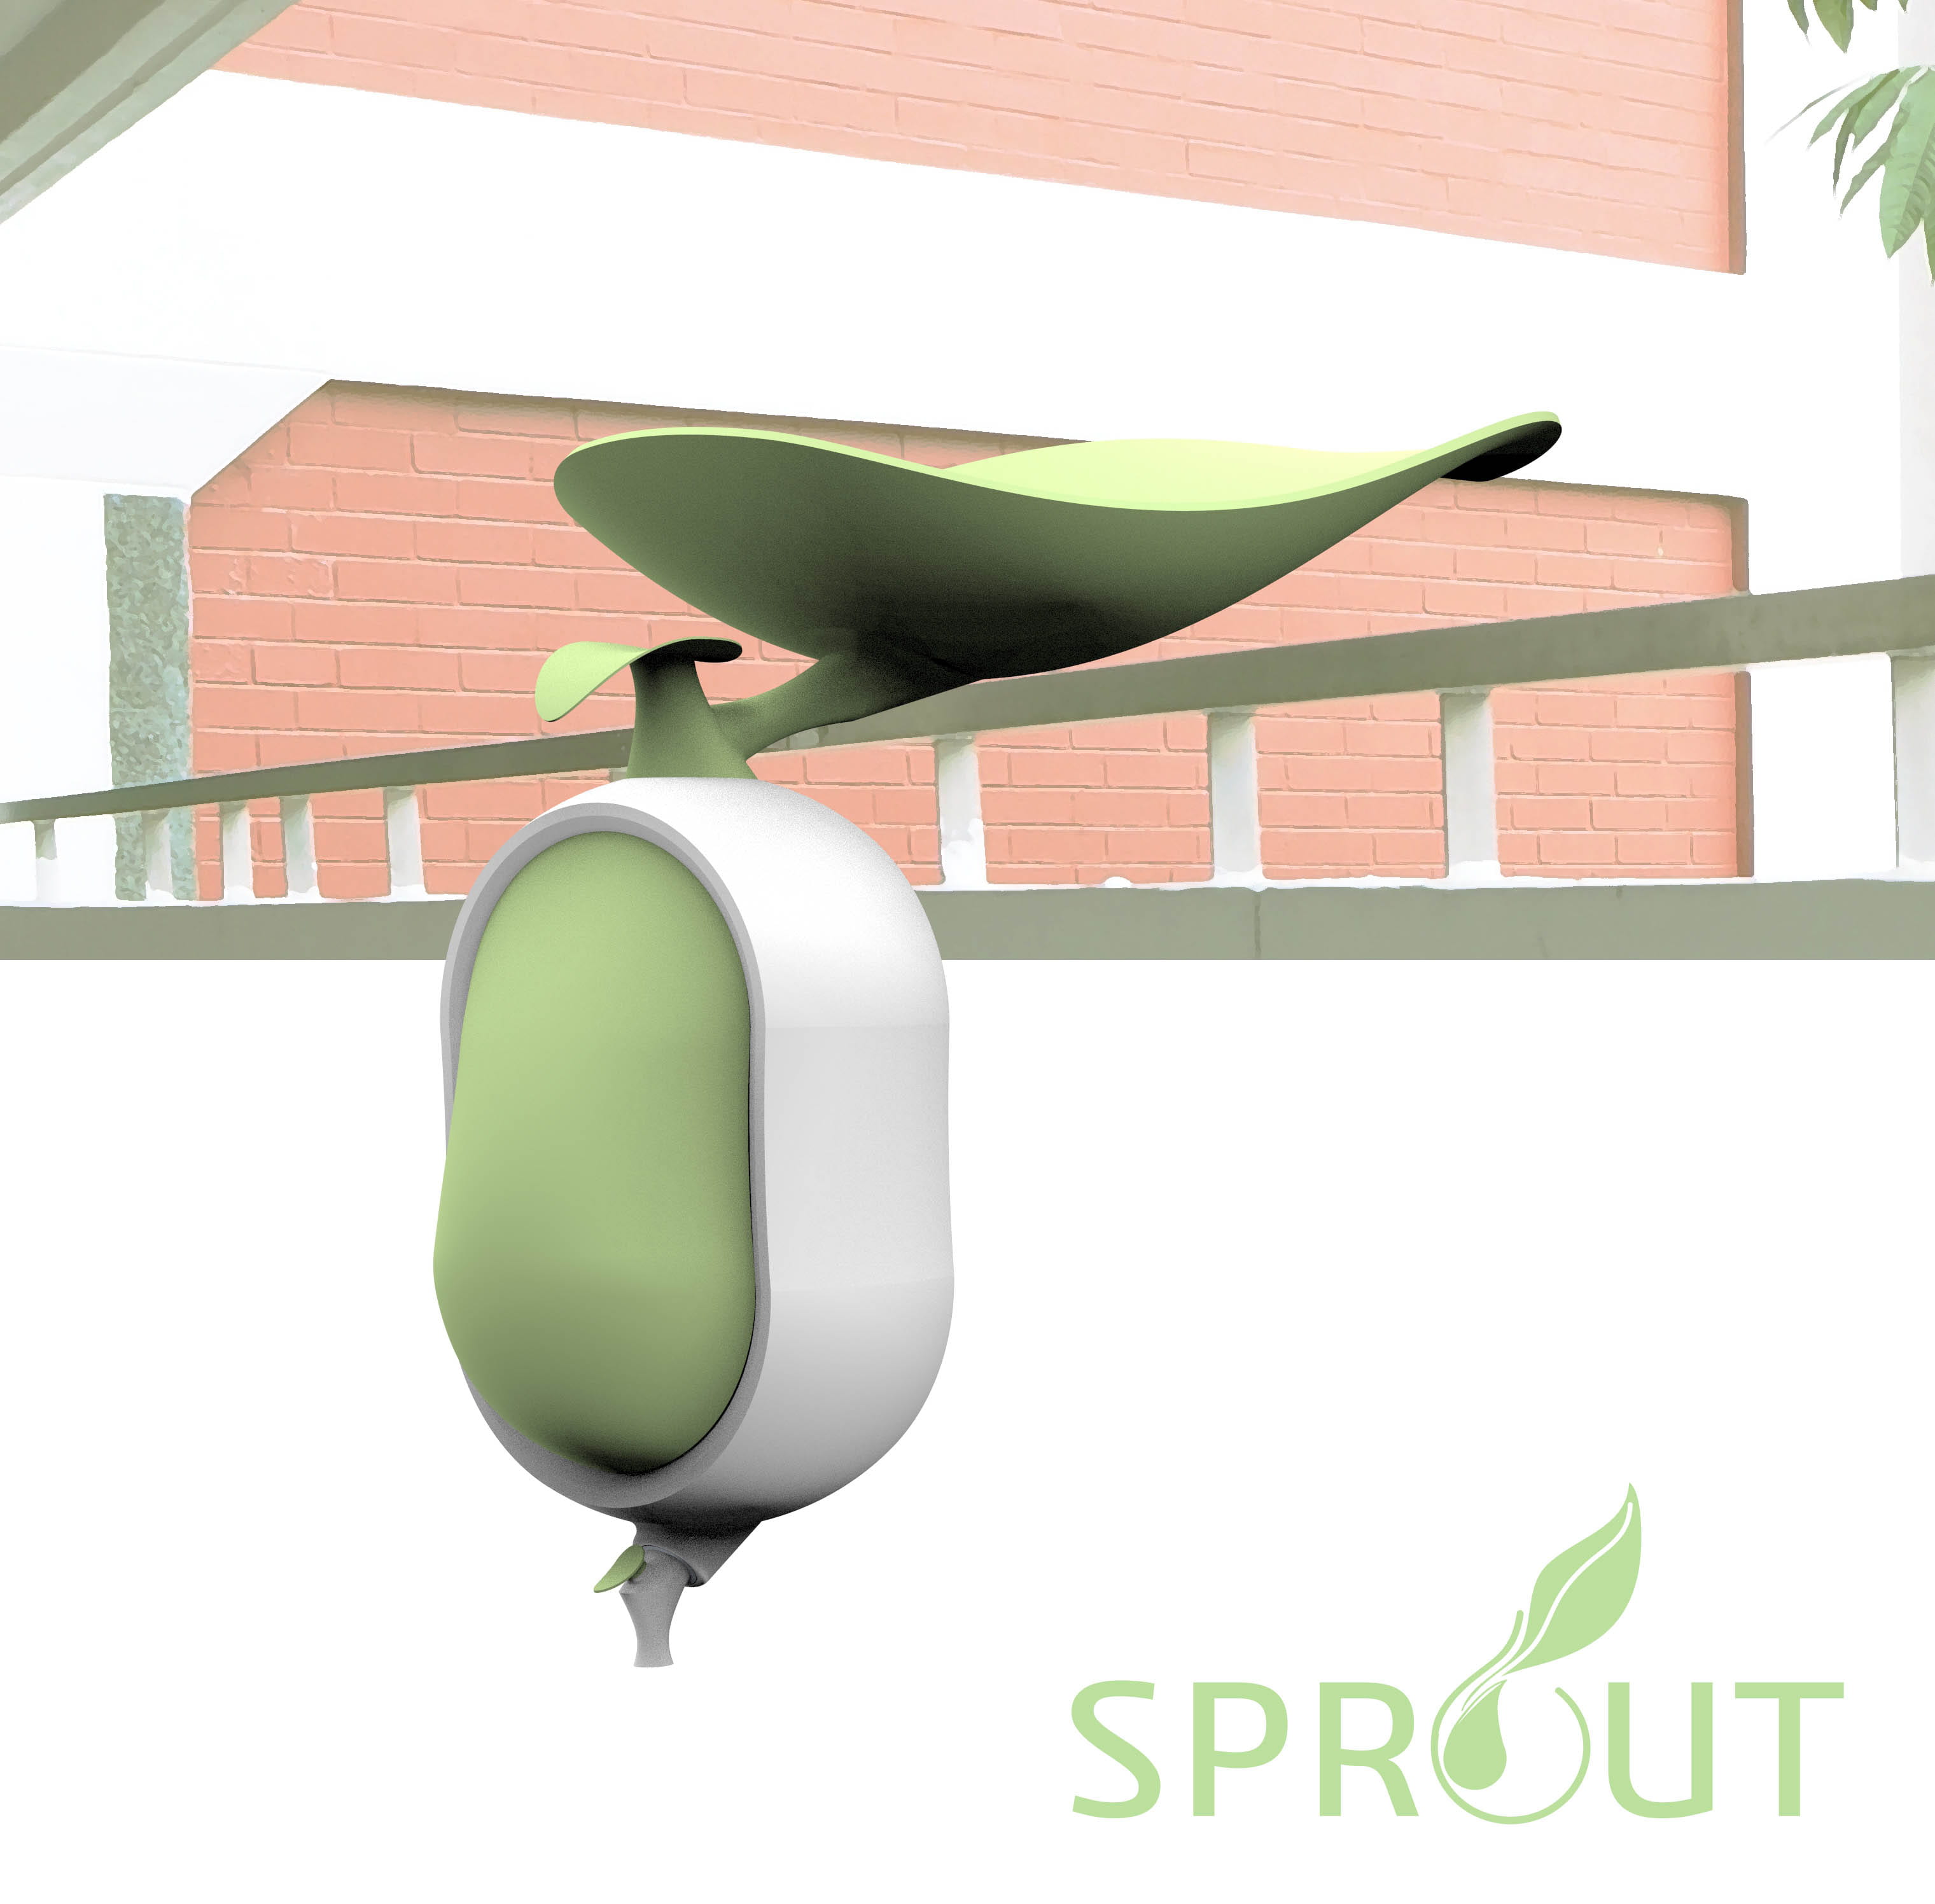 Sprout at NTU ADM Portfolio